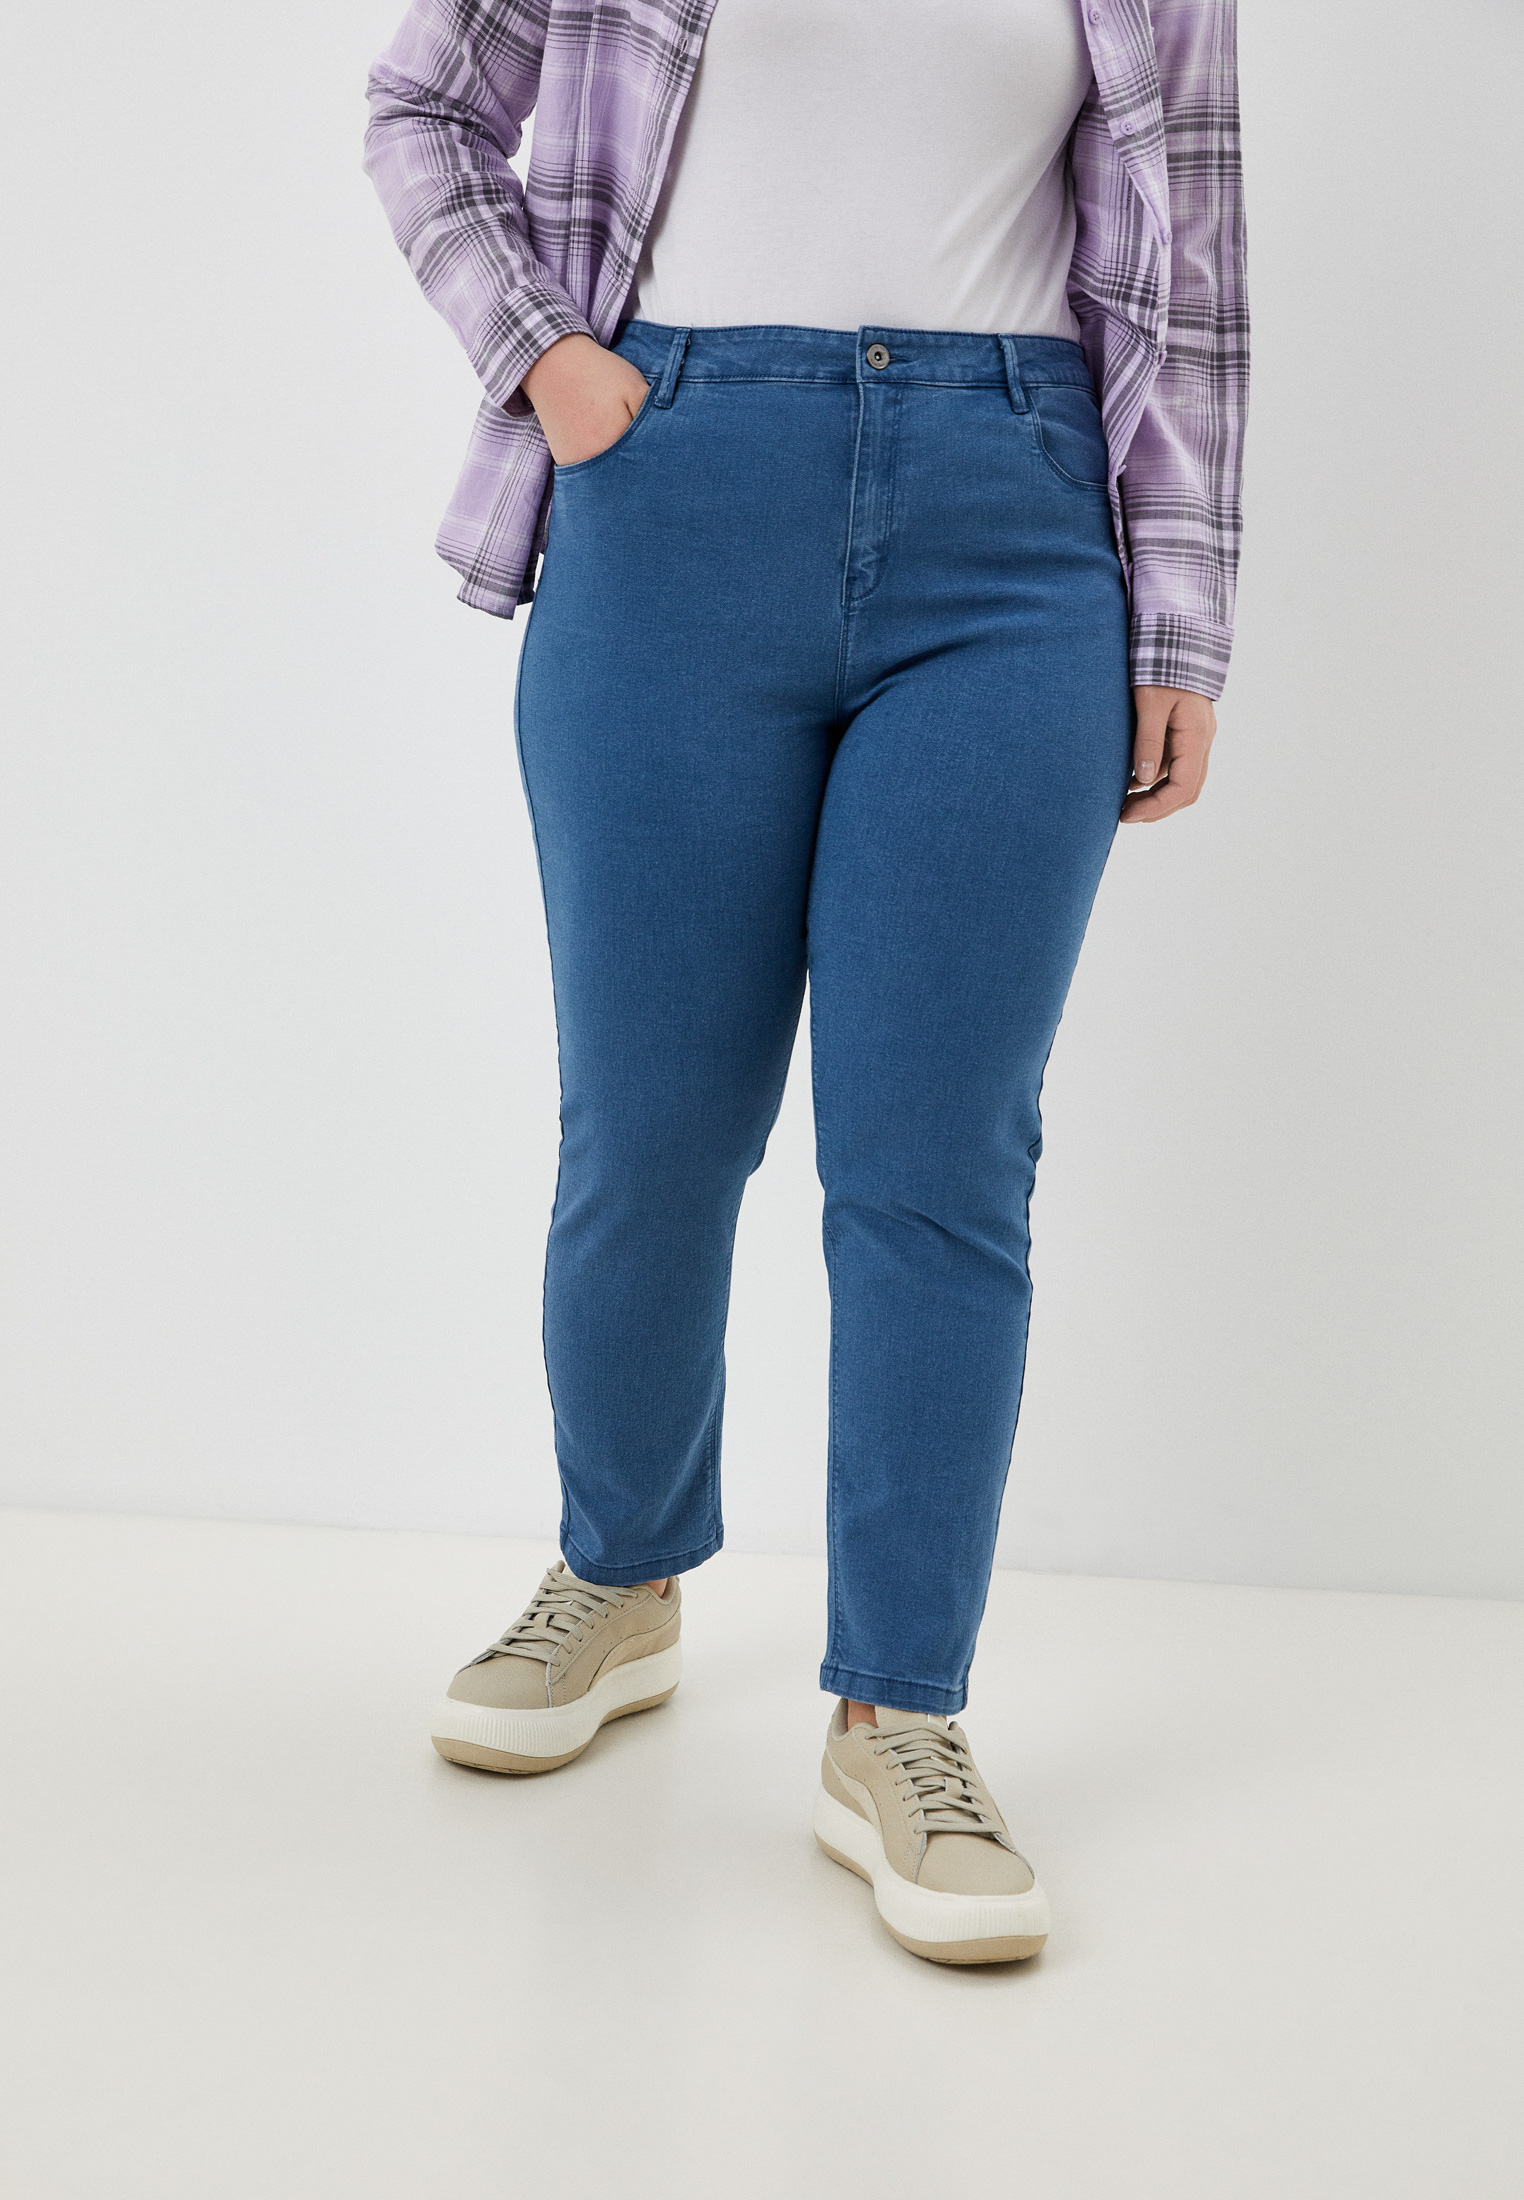 Зауженные джинсы женские Rosa Thea (Роса Ти) 5892249 купить за 3199 руб.